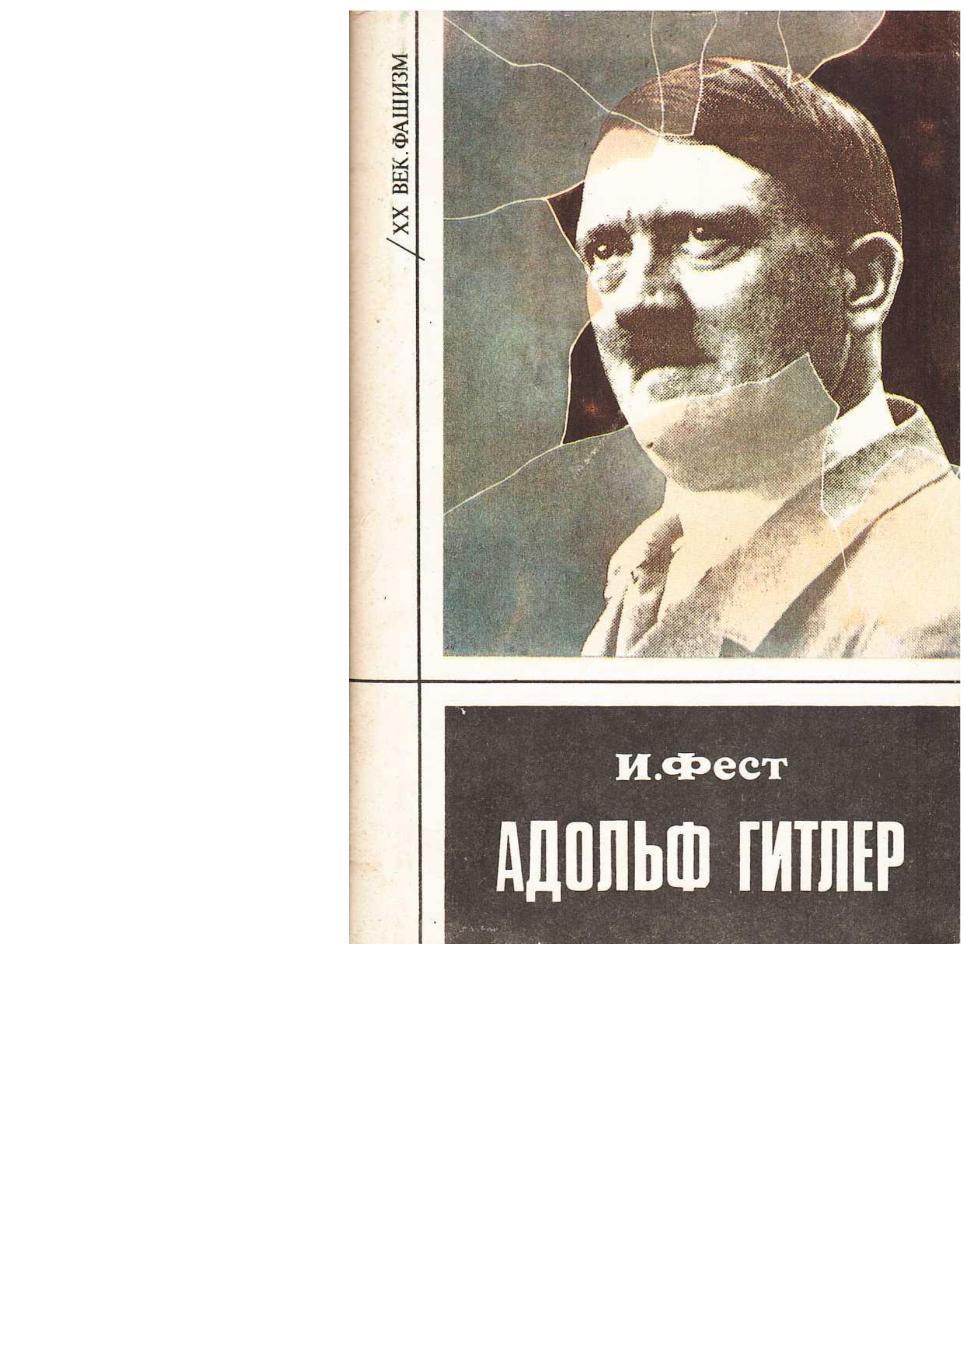 Фест И. Гитлер. Биография. – Пермь, 1993.